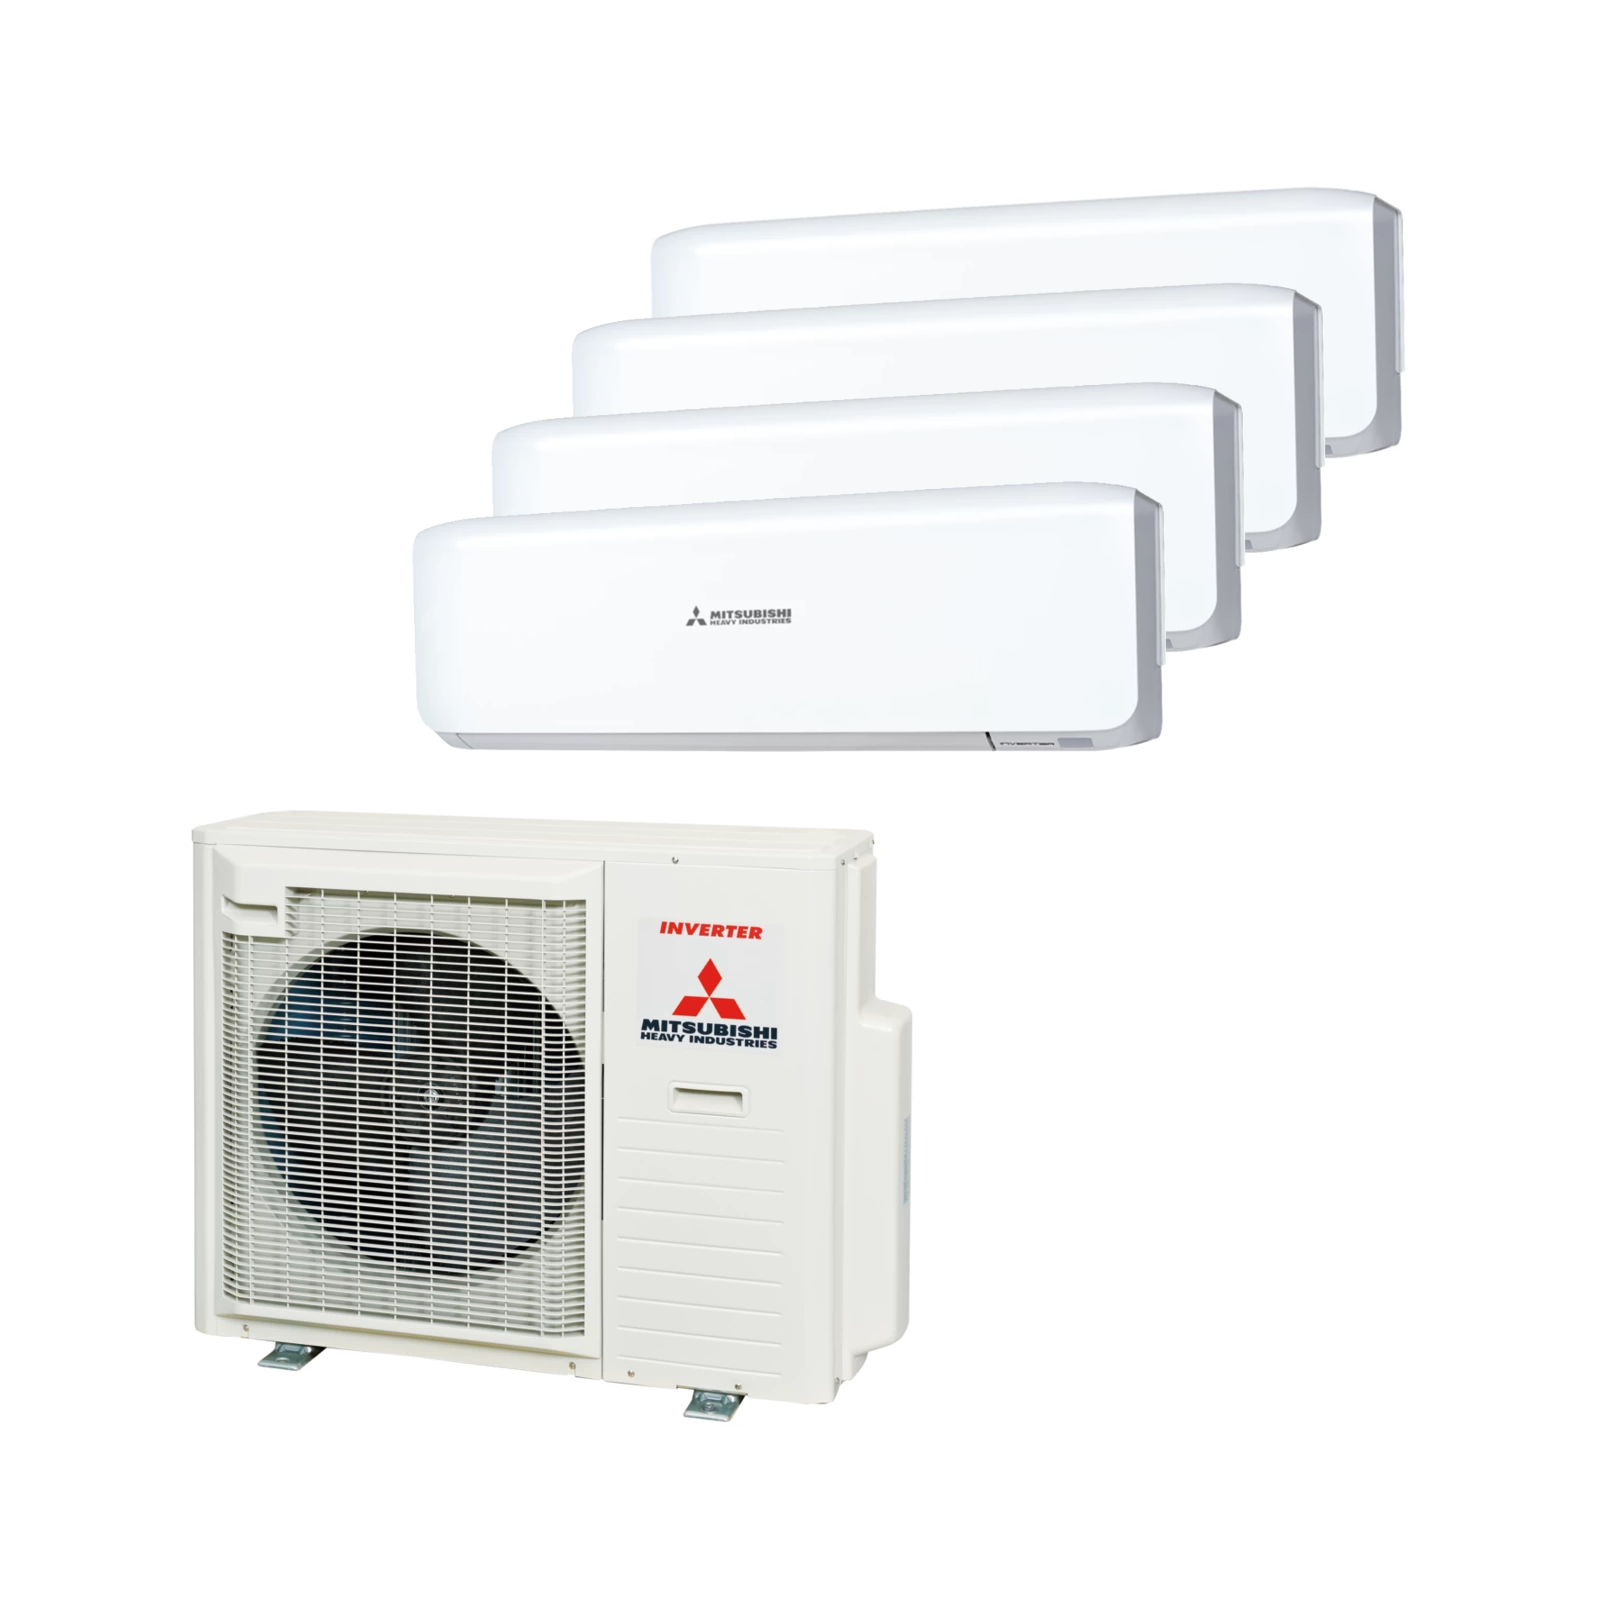 Klimaanlage Multisplit- Set Außengerät SCM80ZM-S1 mit 4 Wandgeräte SRK20ZS-W zum Kühlen|Heizen 